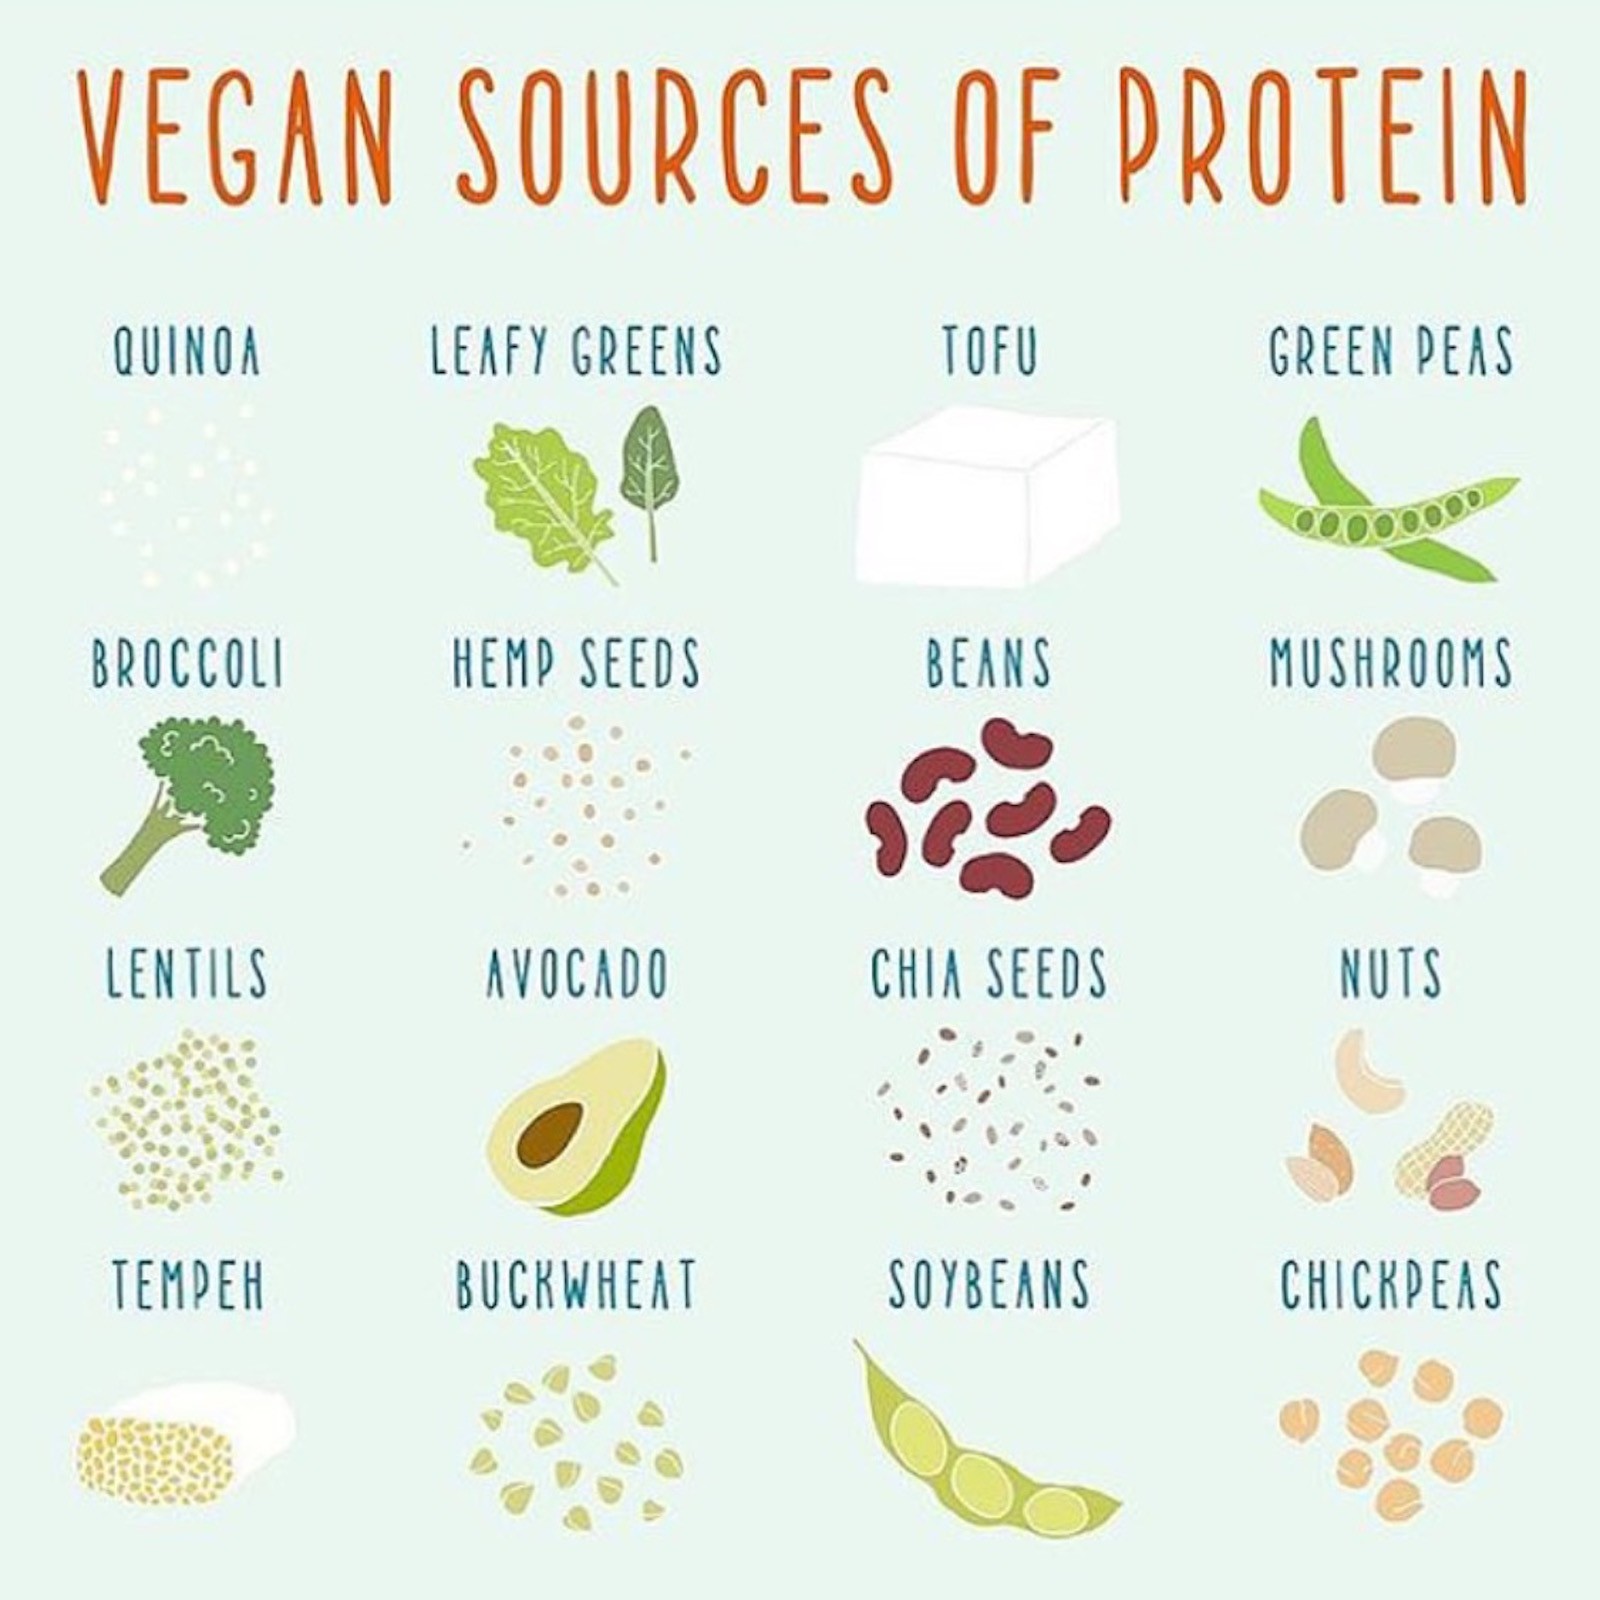 Protein on a low FODMAP Vegan Diet